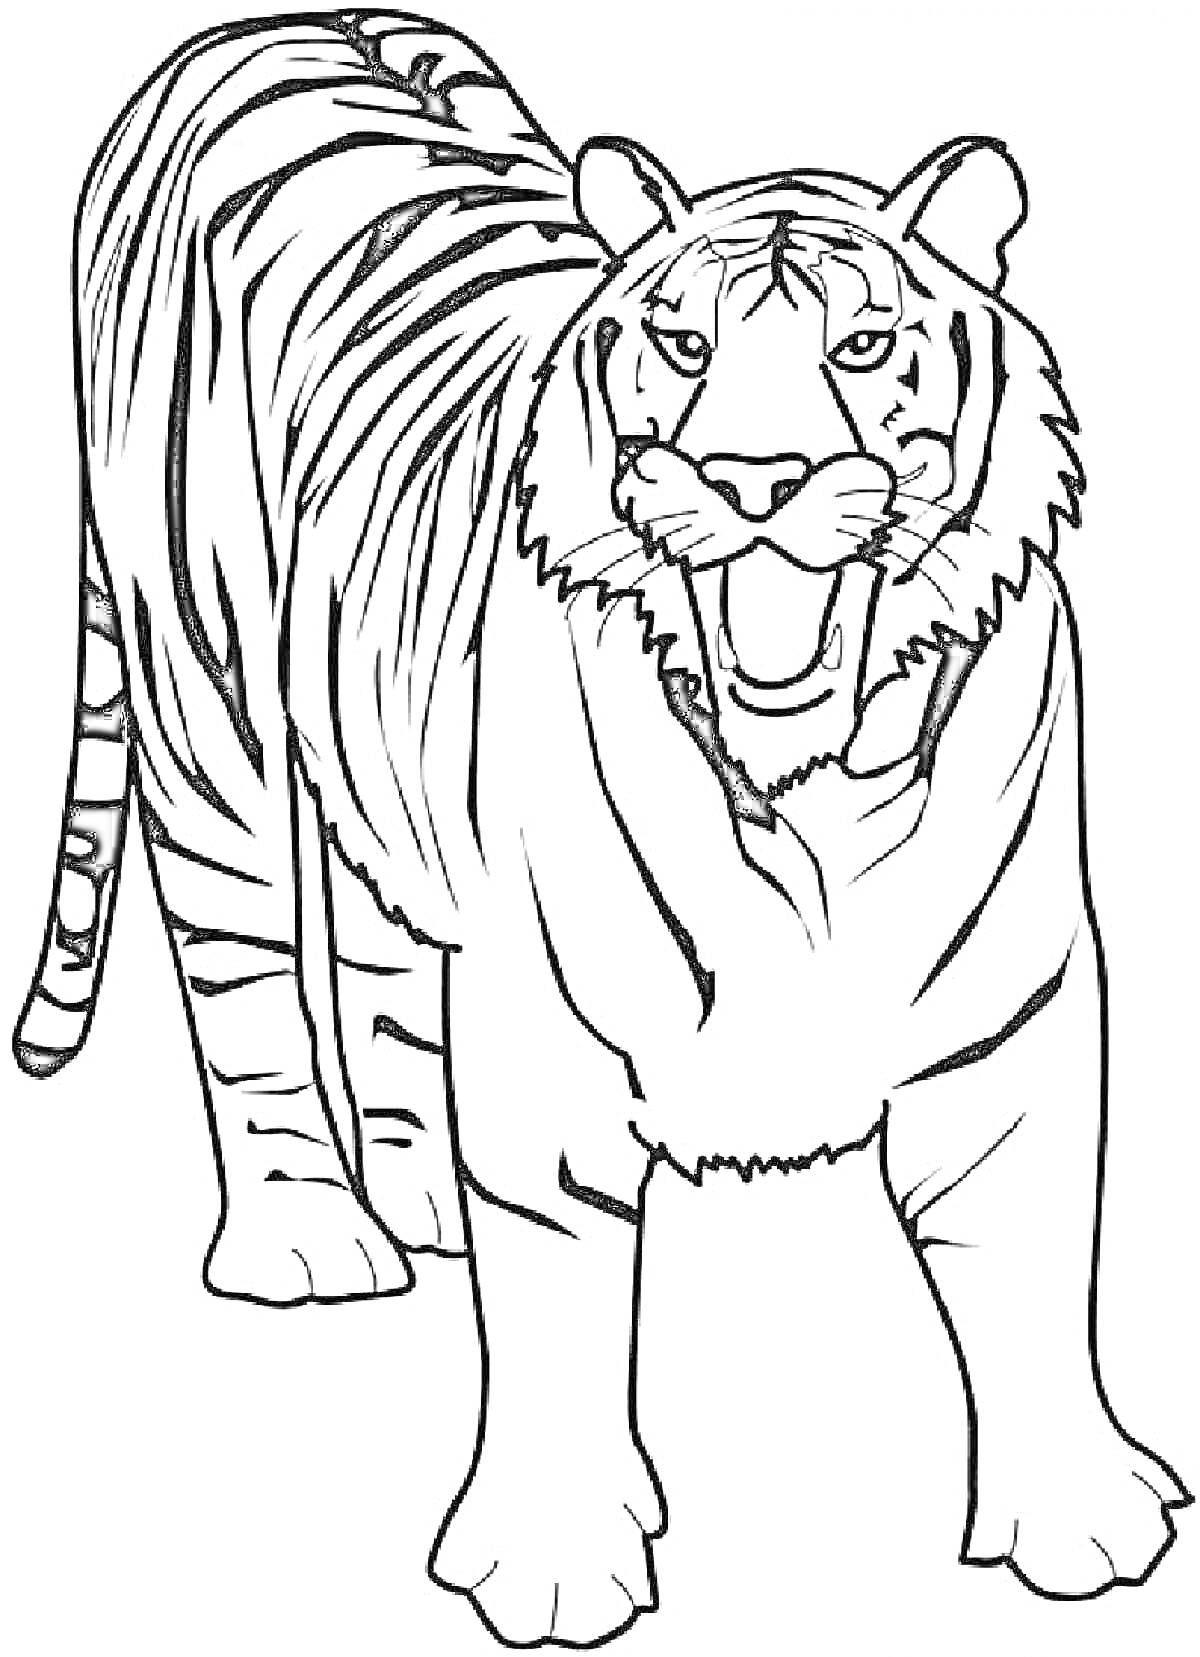 Раскраска Тигр в полный рост с полосами на теле, стоящий на четырех лапах